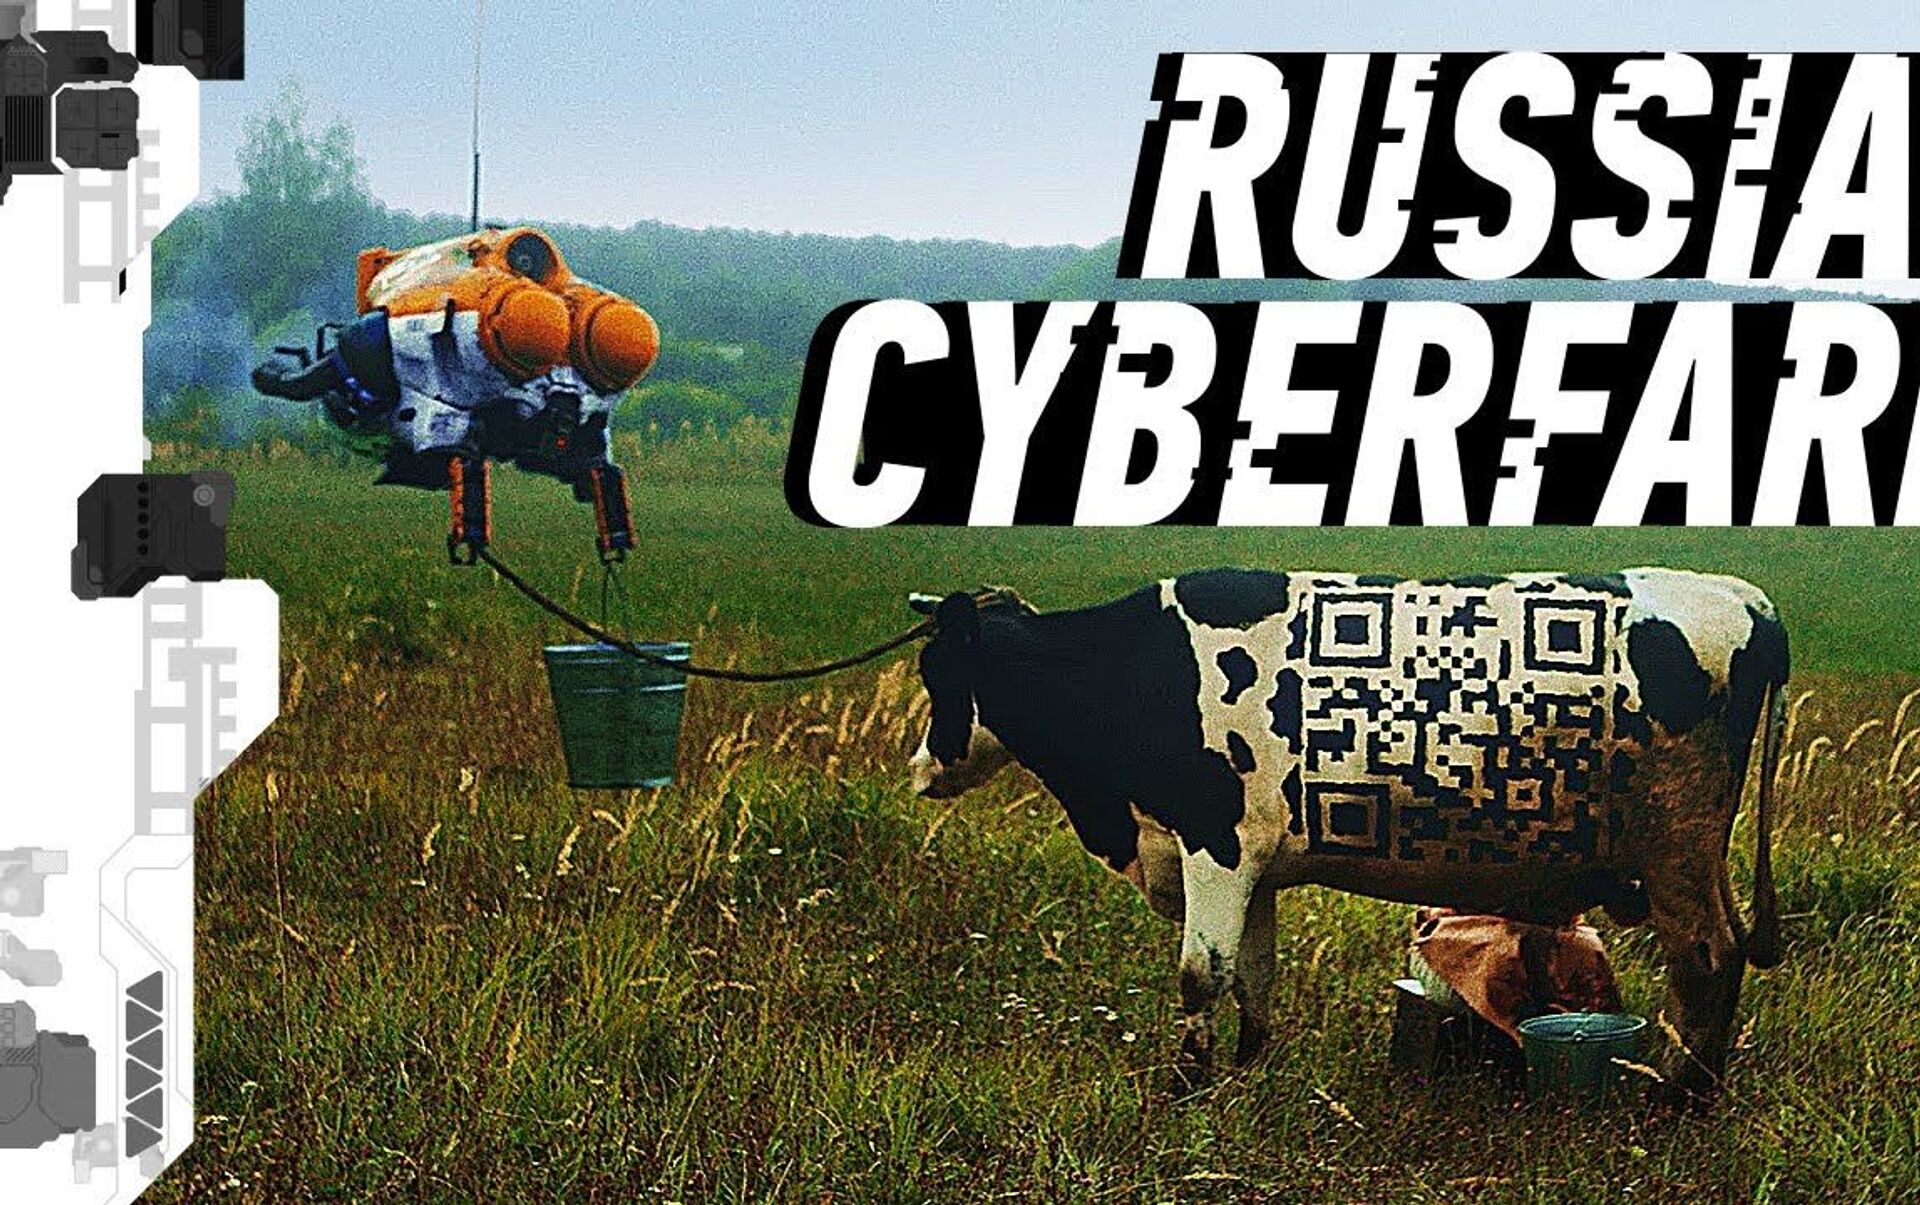 Russian cyberpunk farm фото 59